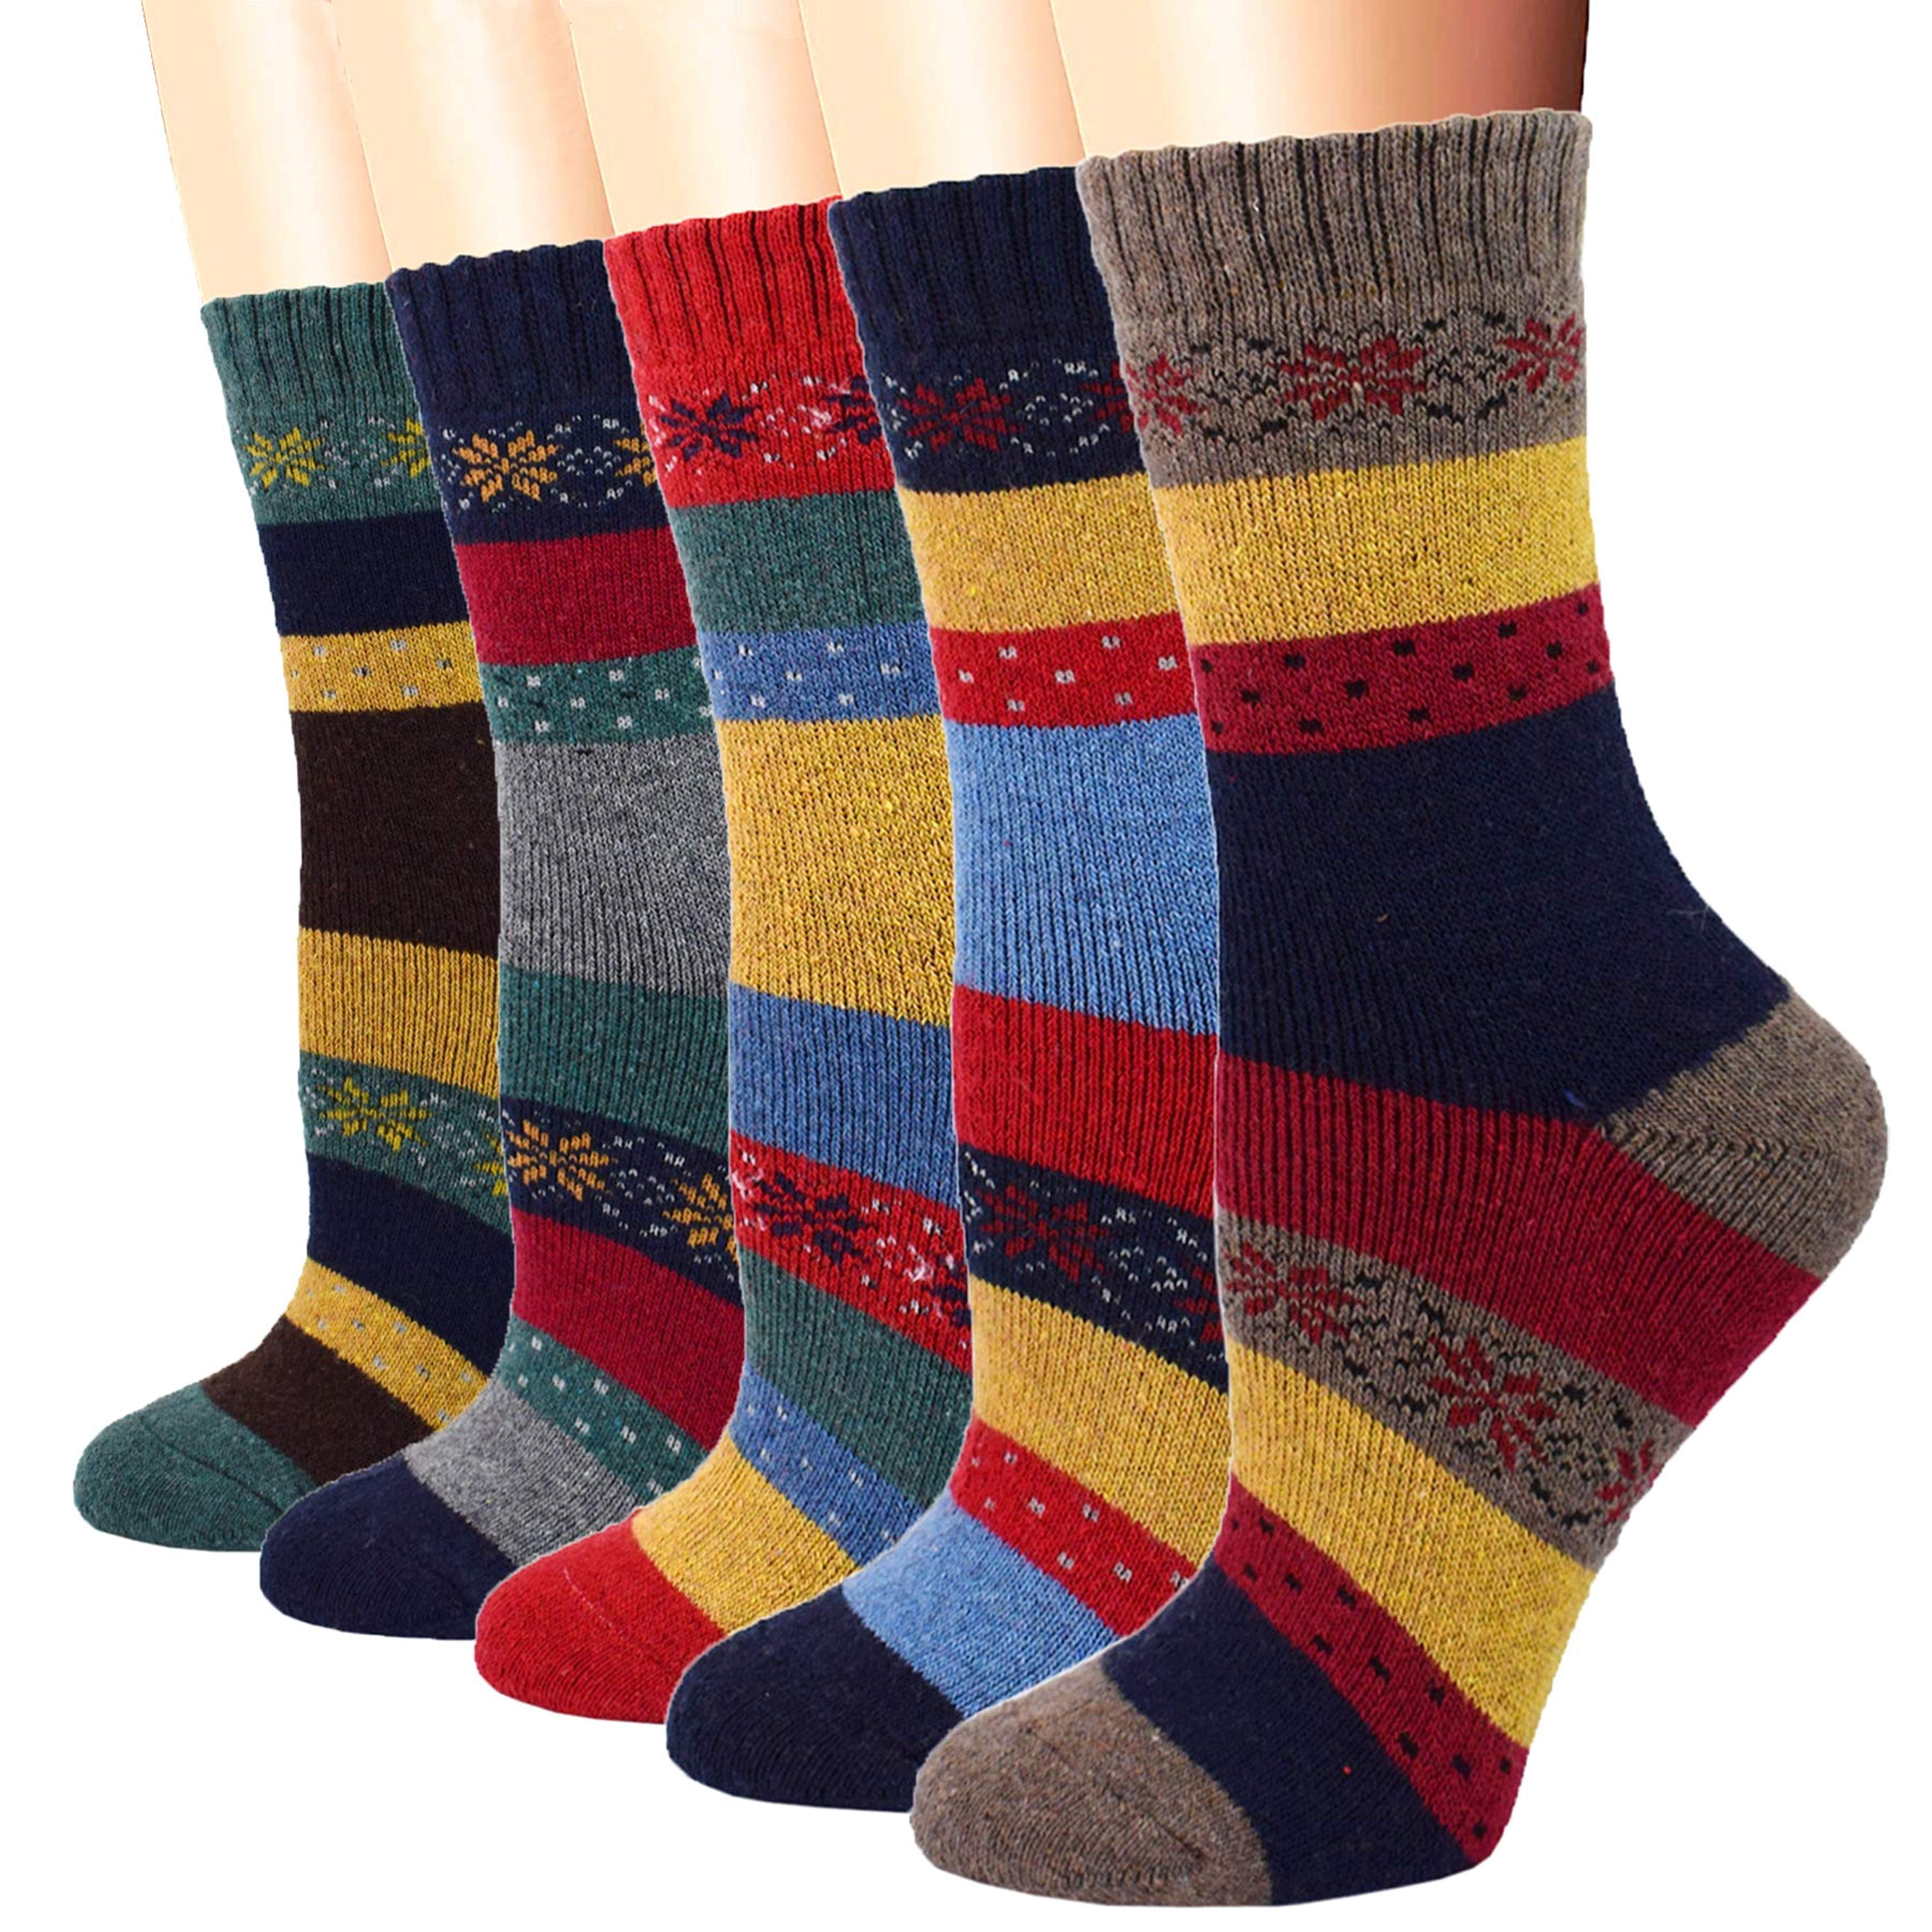 Hand knit socks wool socks winter socks warm socks unisex socks woman socks men socks leg warmers unisex socks winter socks blue socks